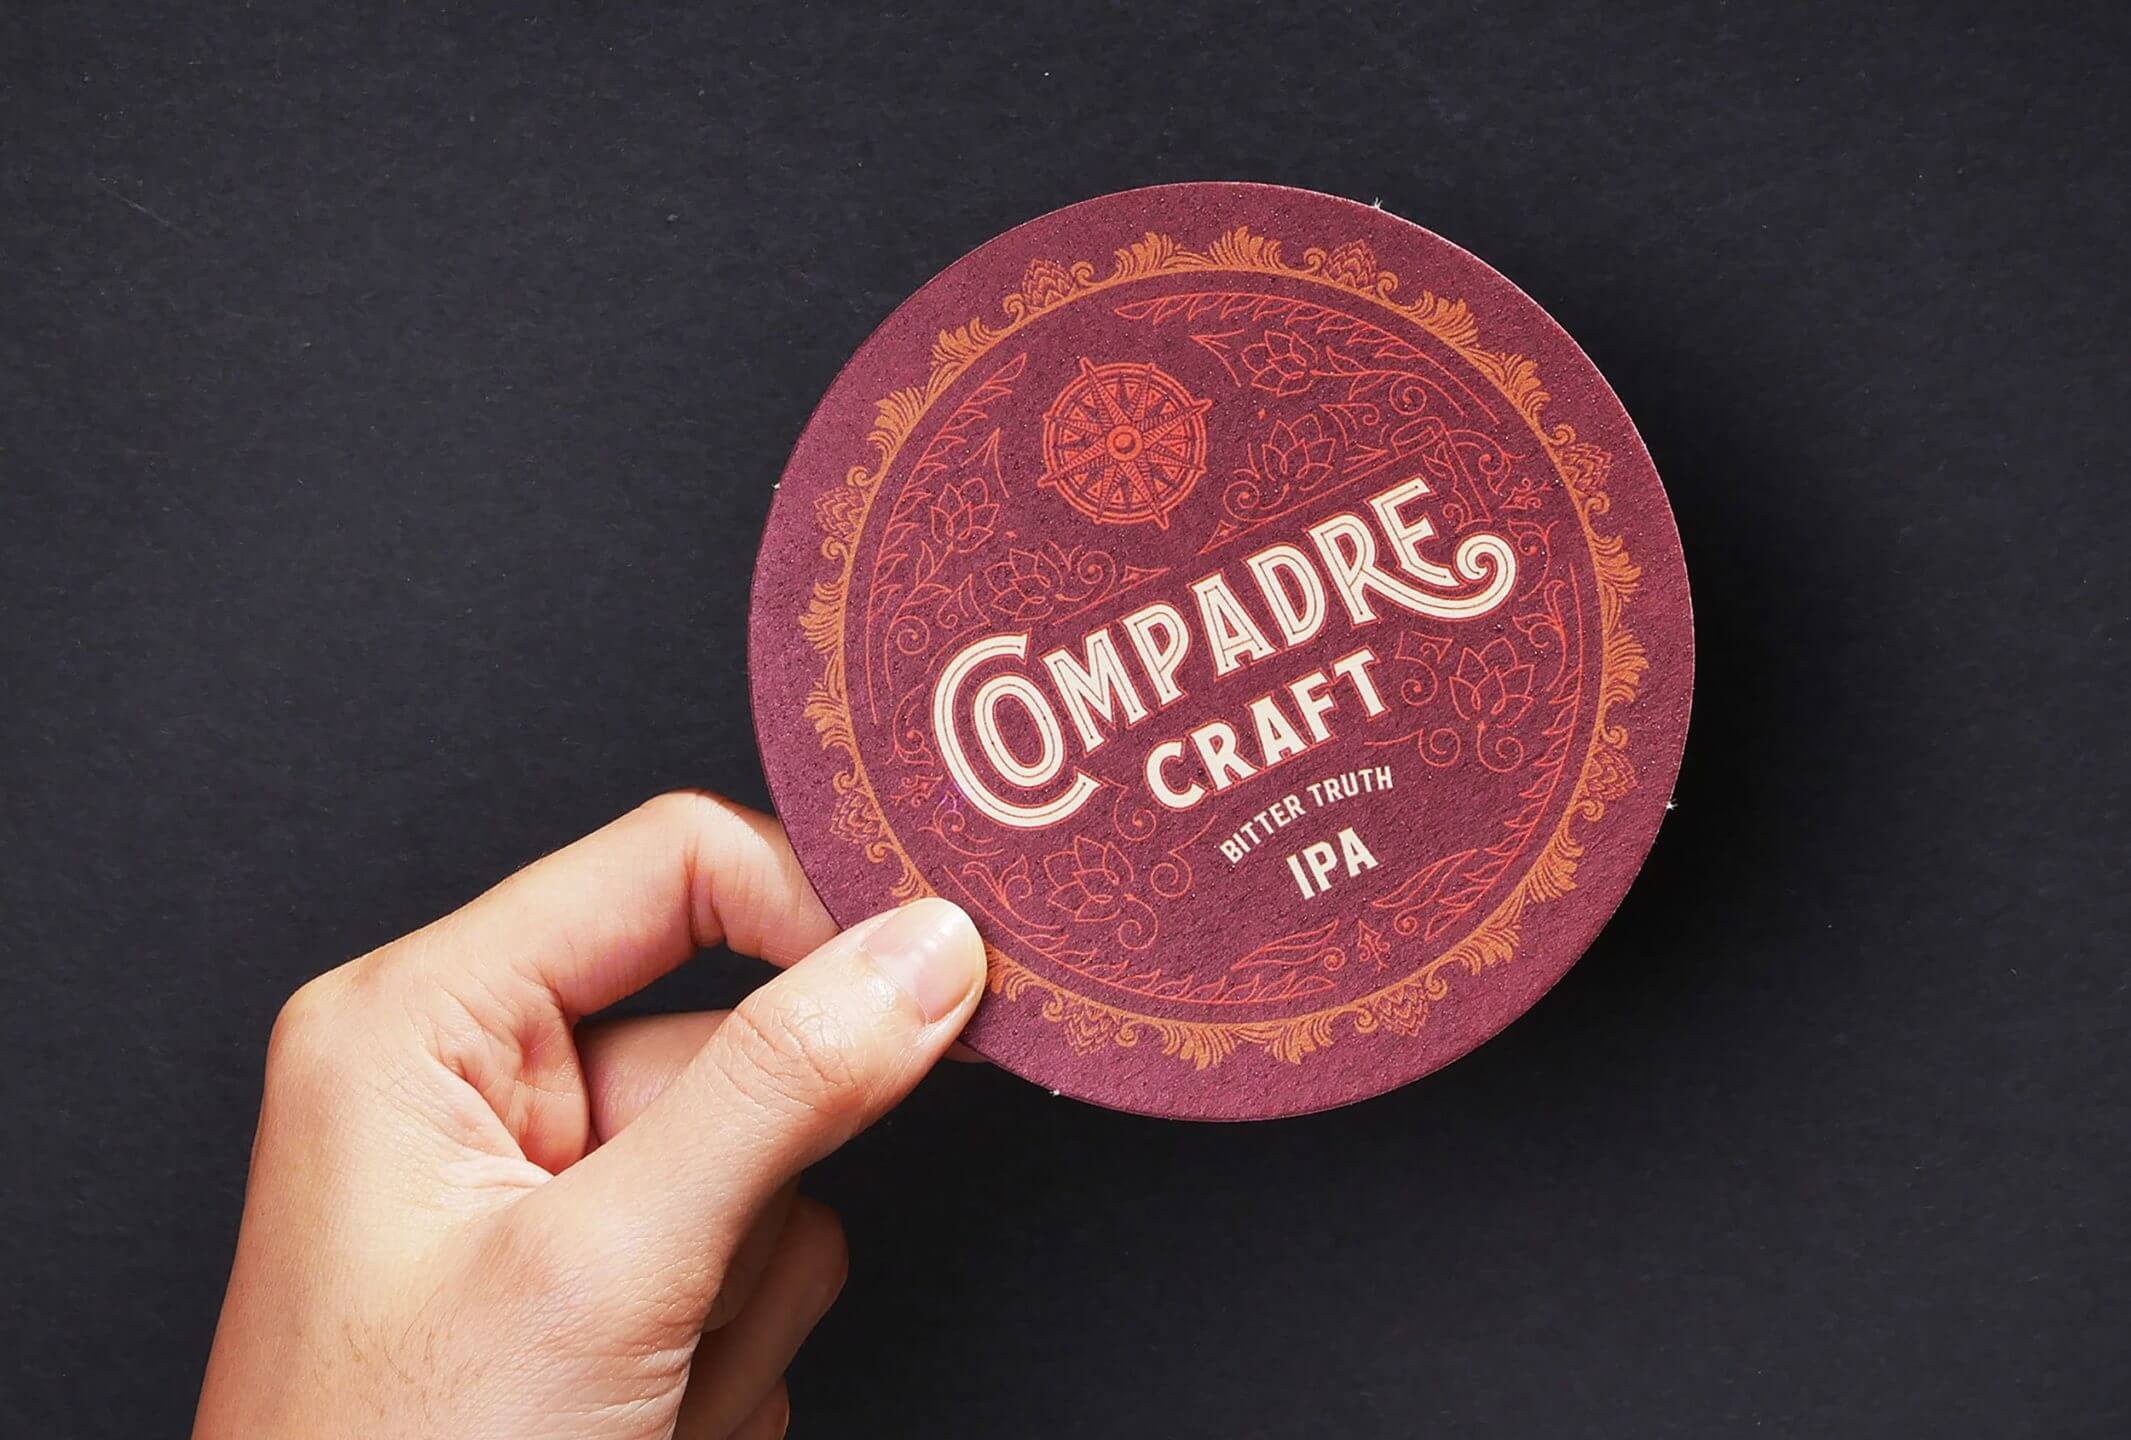 Vintage coaster design and logo for food and beverage brand Compadre Craft Beer